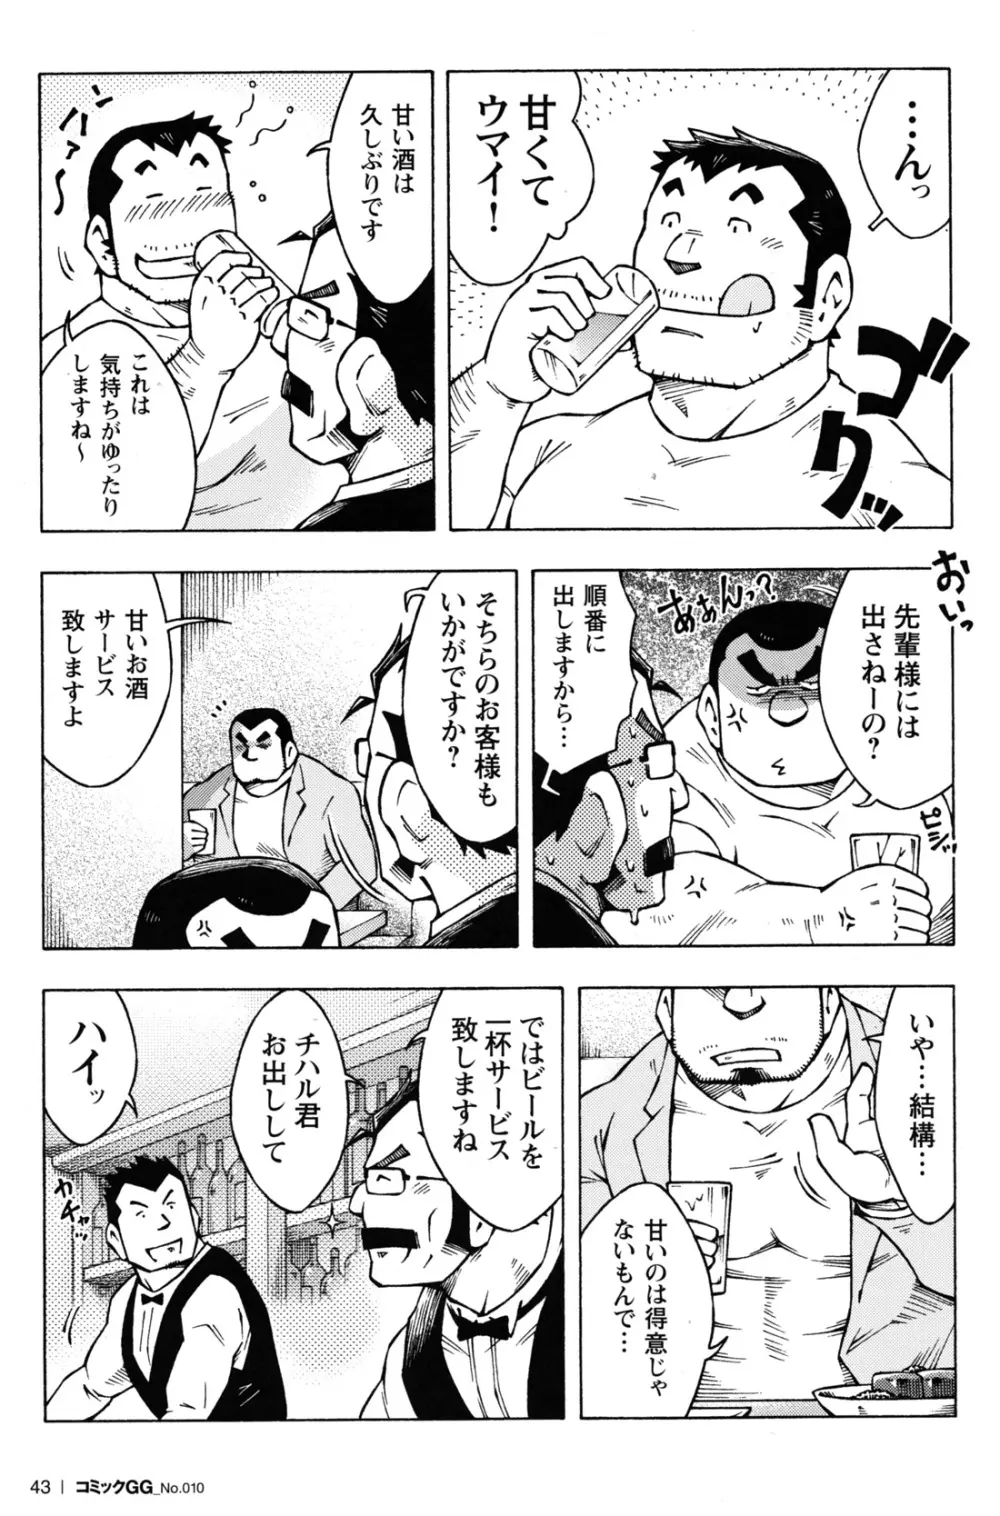 コミックG.G. No.10 のぞき・レイプ・痴漢 40ページ